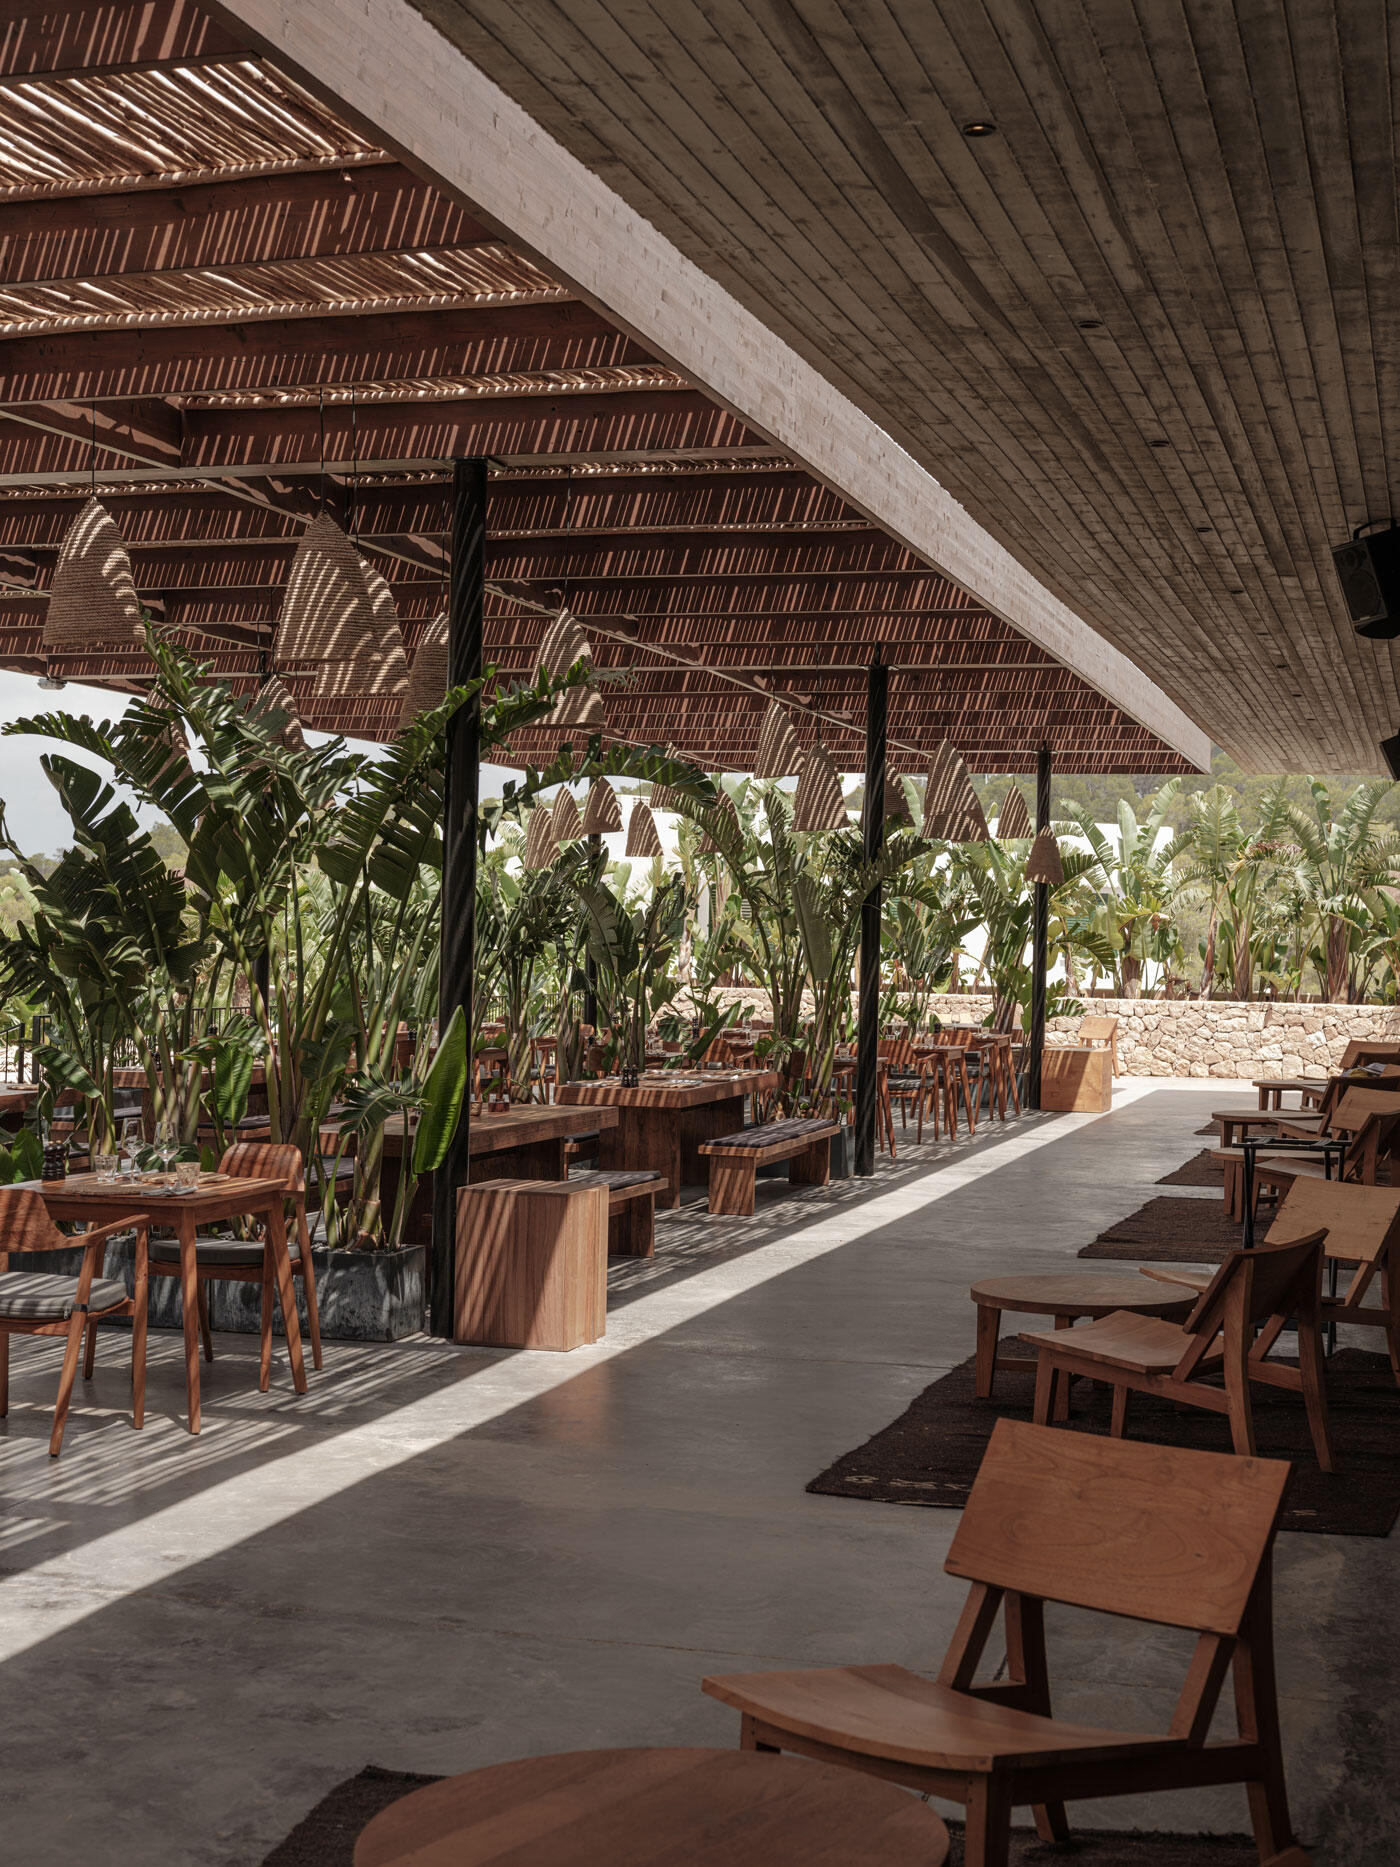 Überdachtes Outdoor-Restaurant mit vielen Tischen und Stühlen und grünen Pflanzen.